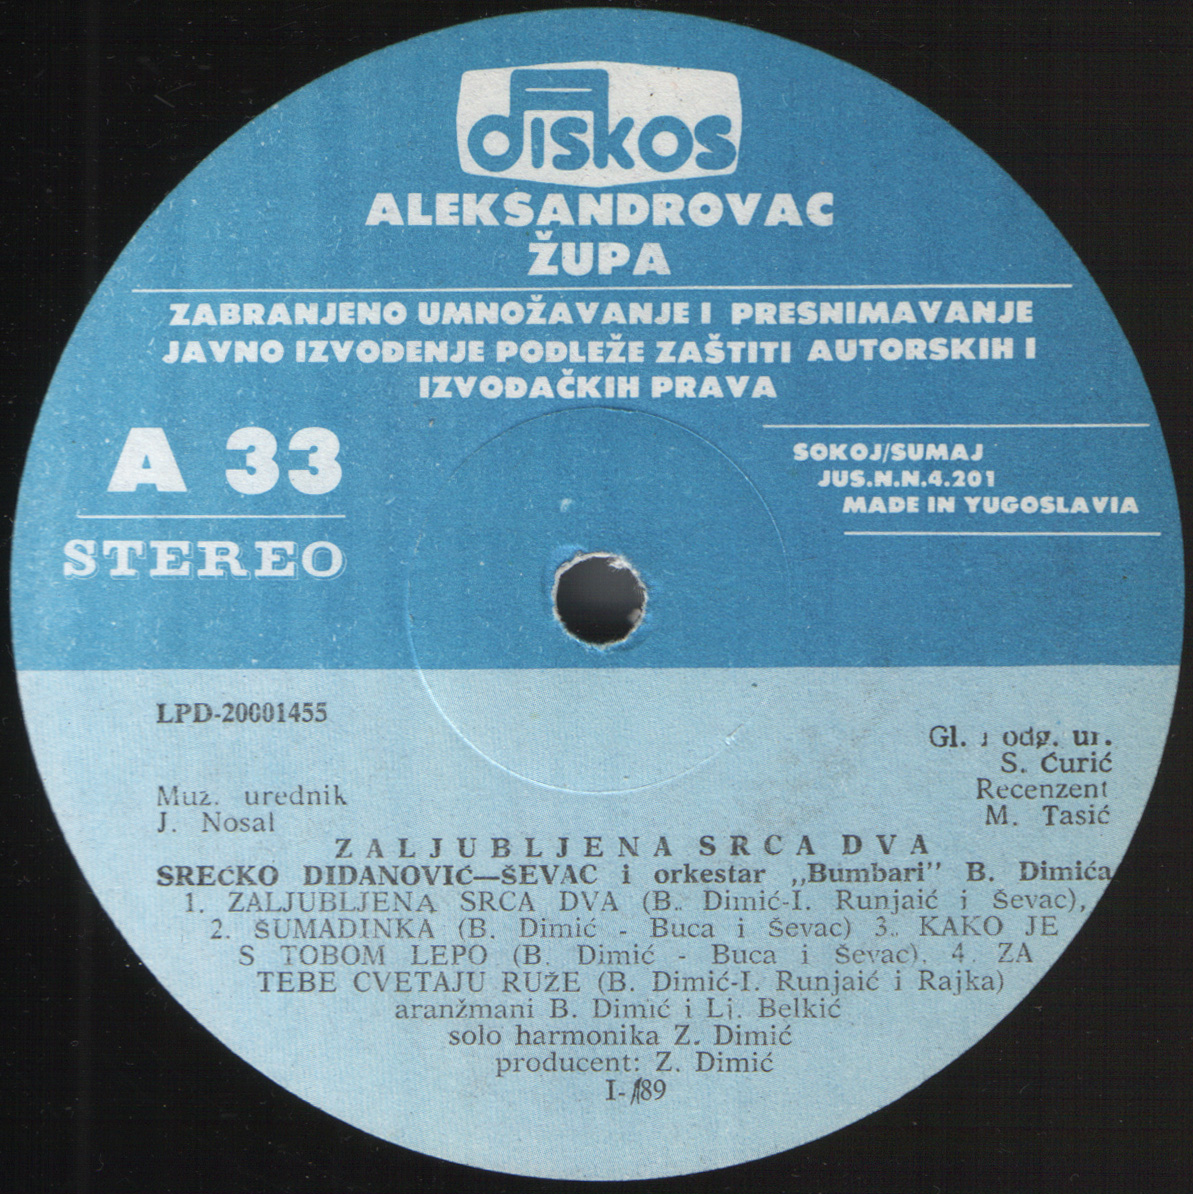 Srecko Didanovic 1989 A